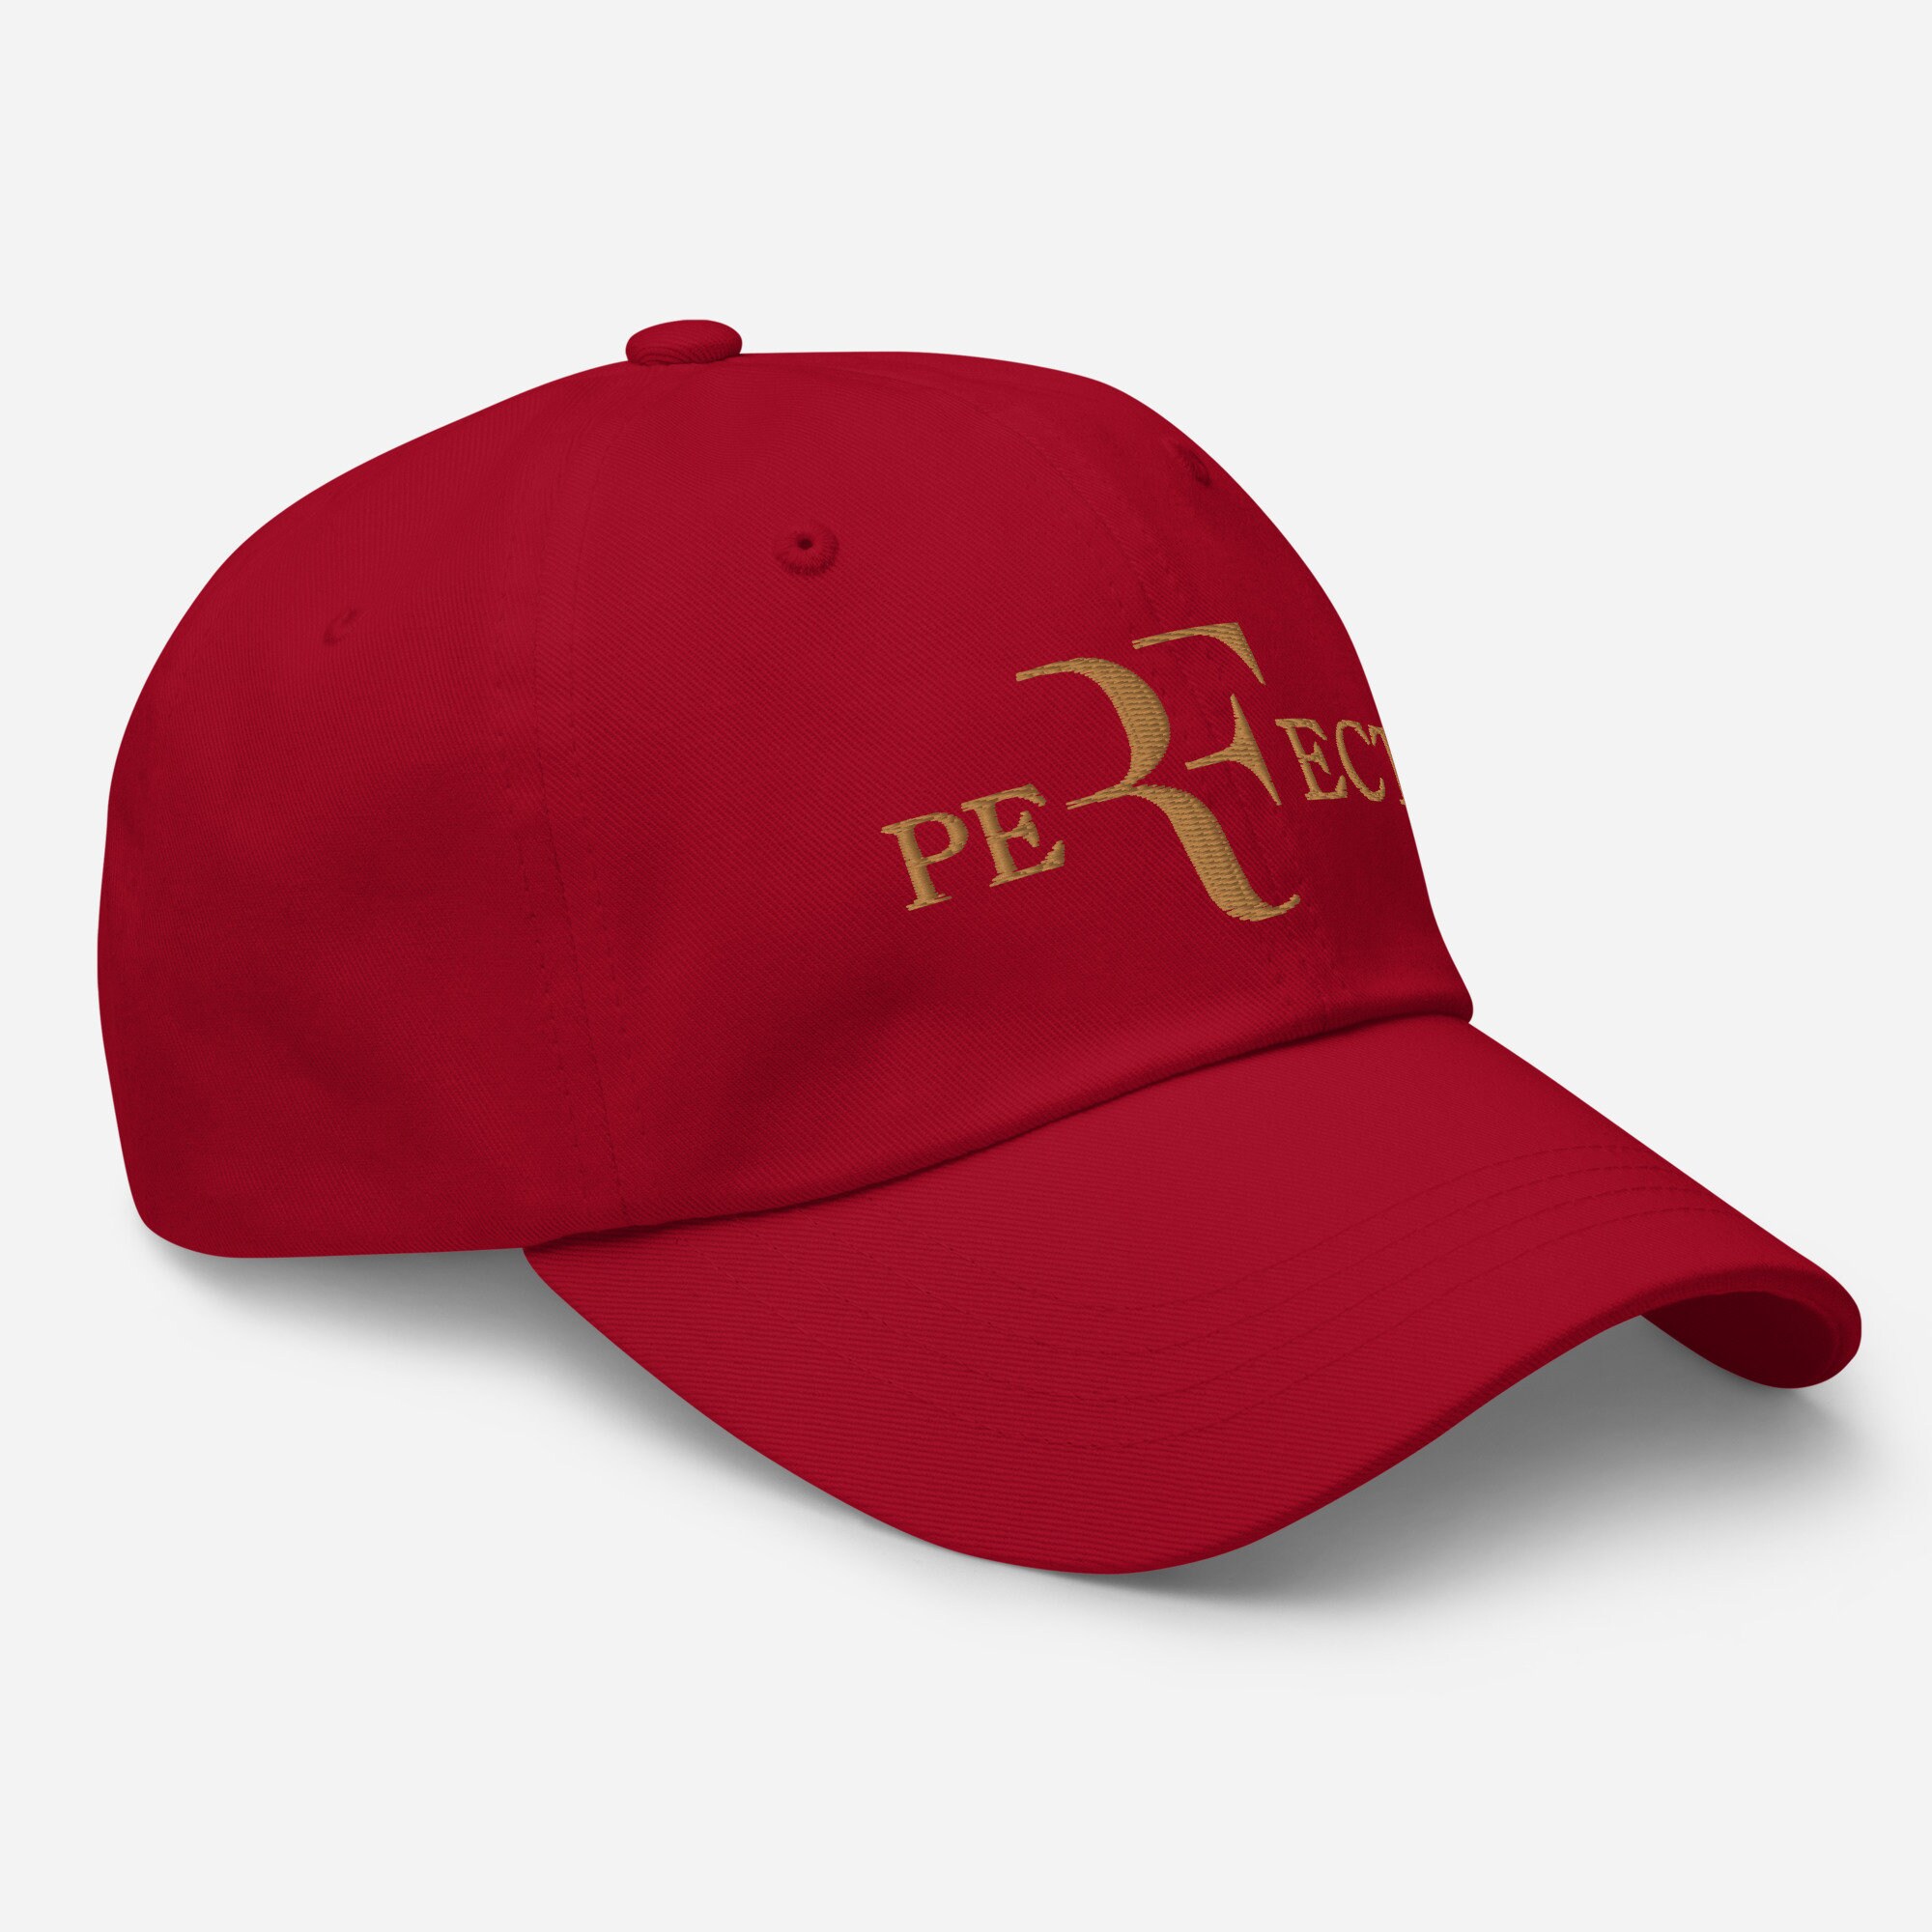 Pefect Roger Federer RF Embroidered Hat